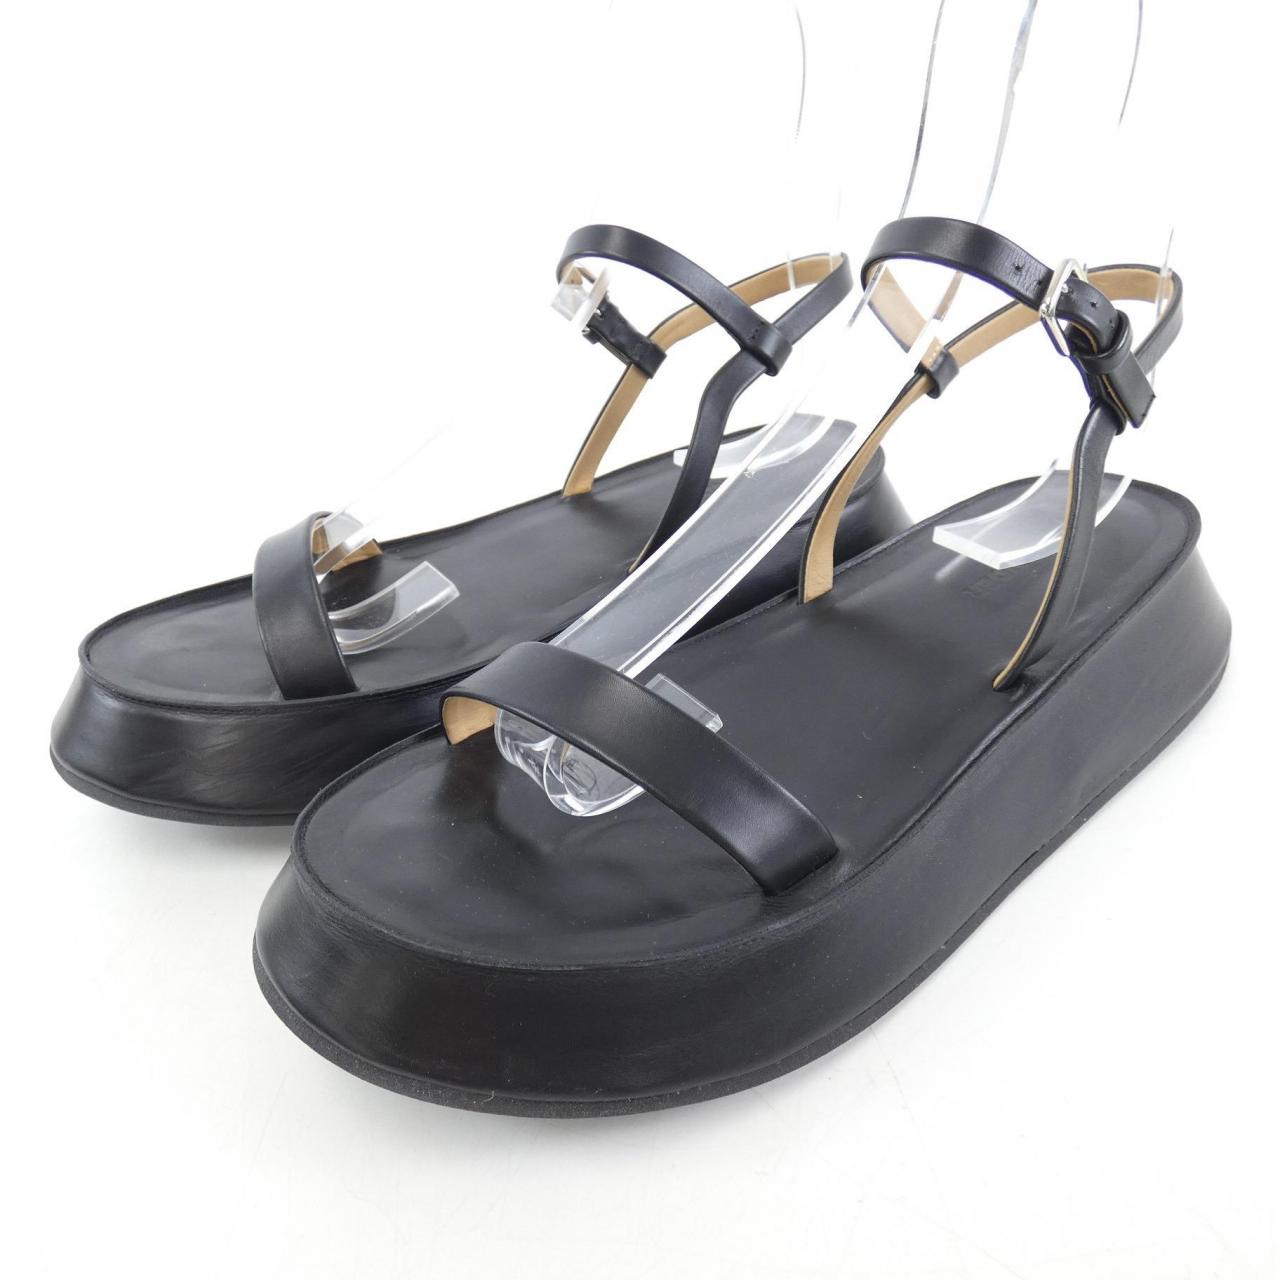 JIL SANDER sandals